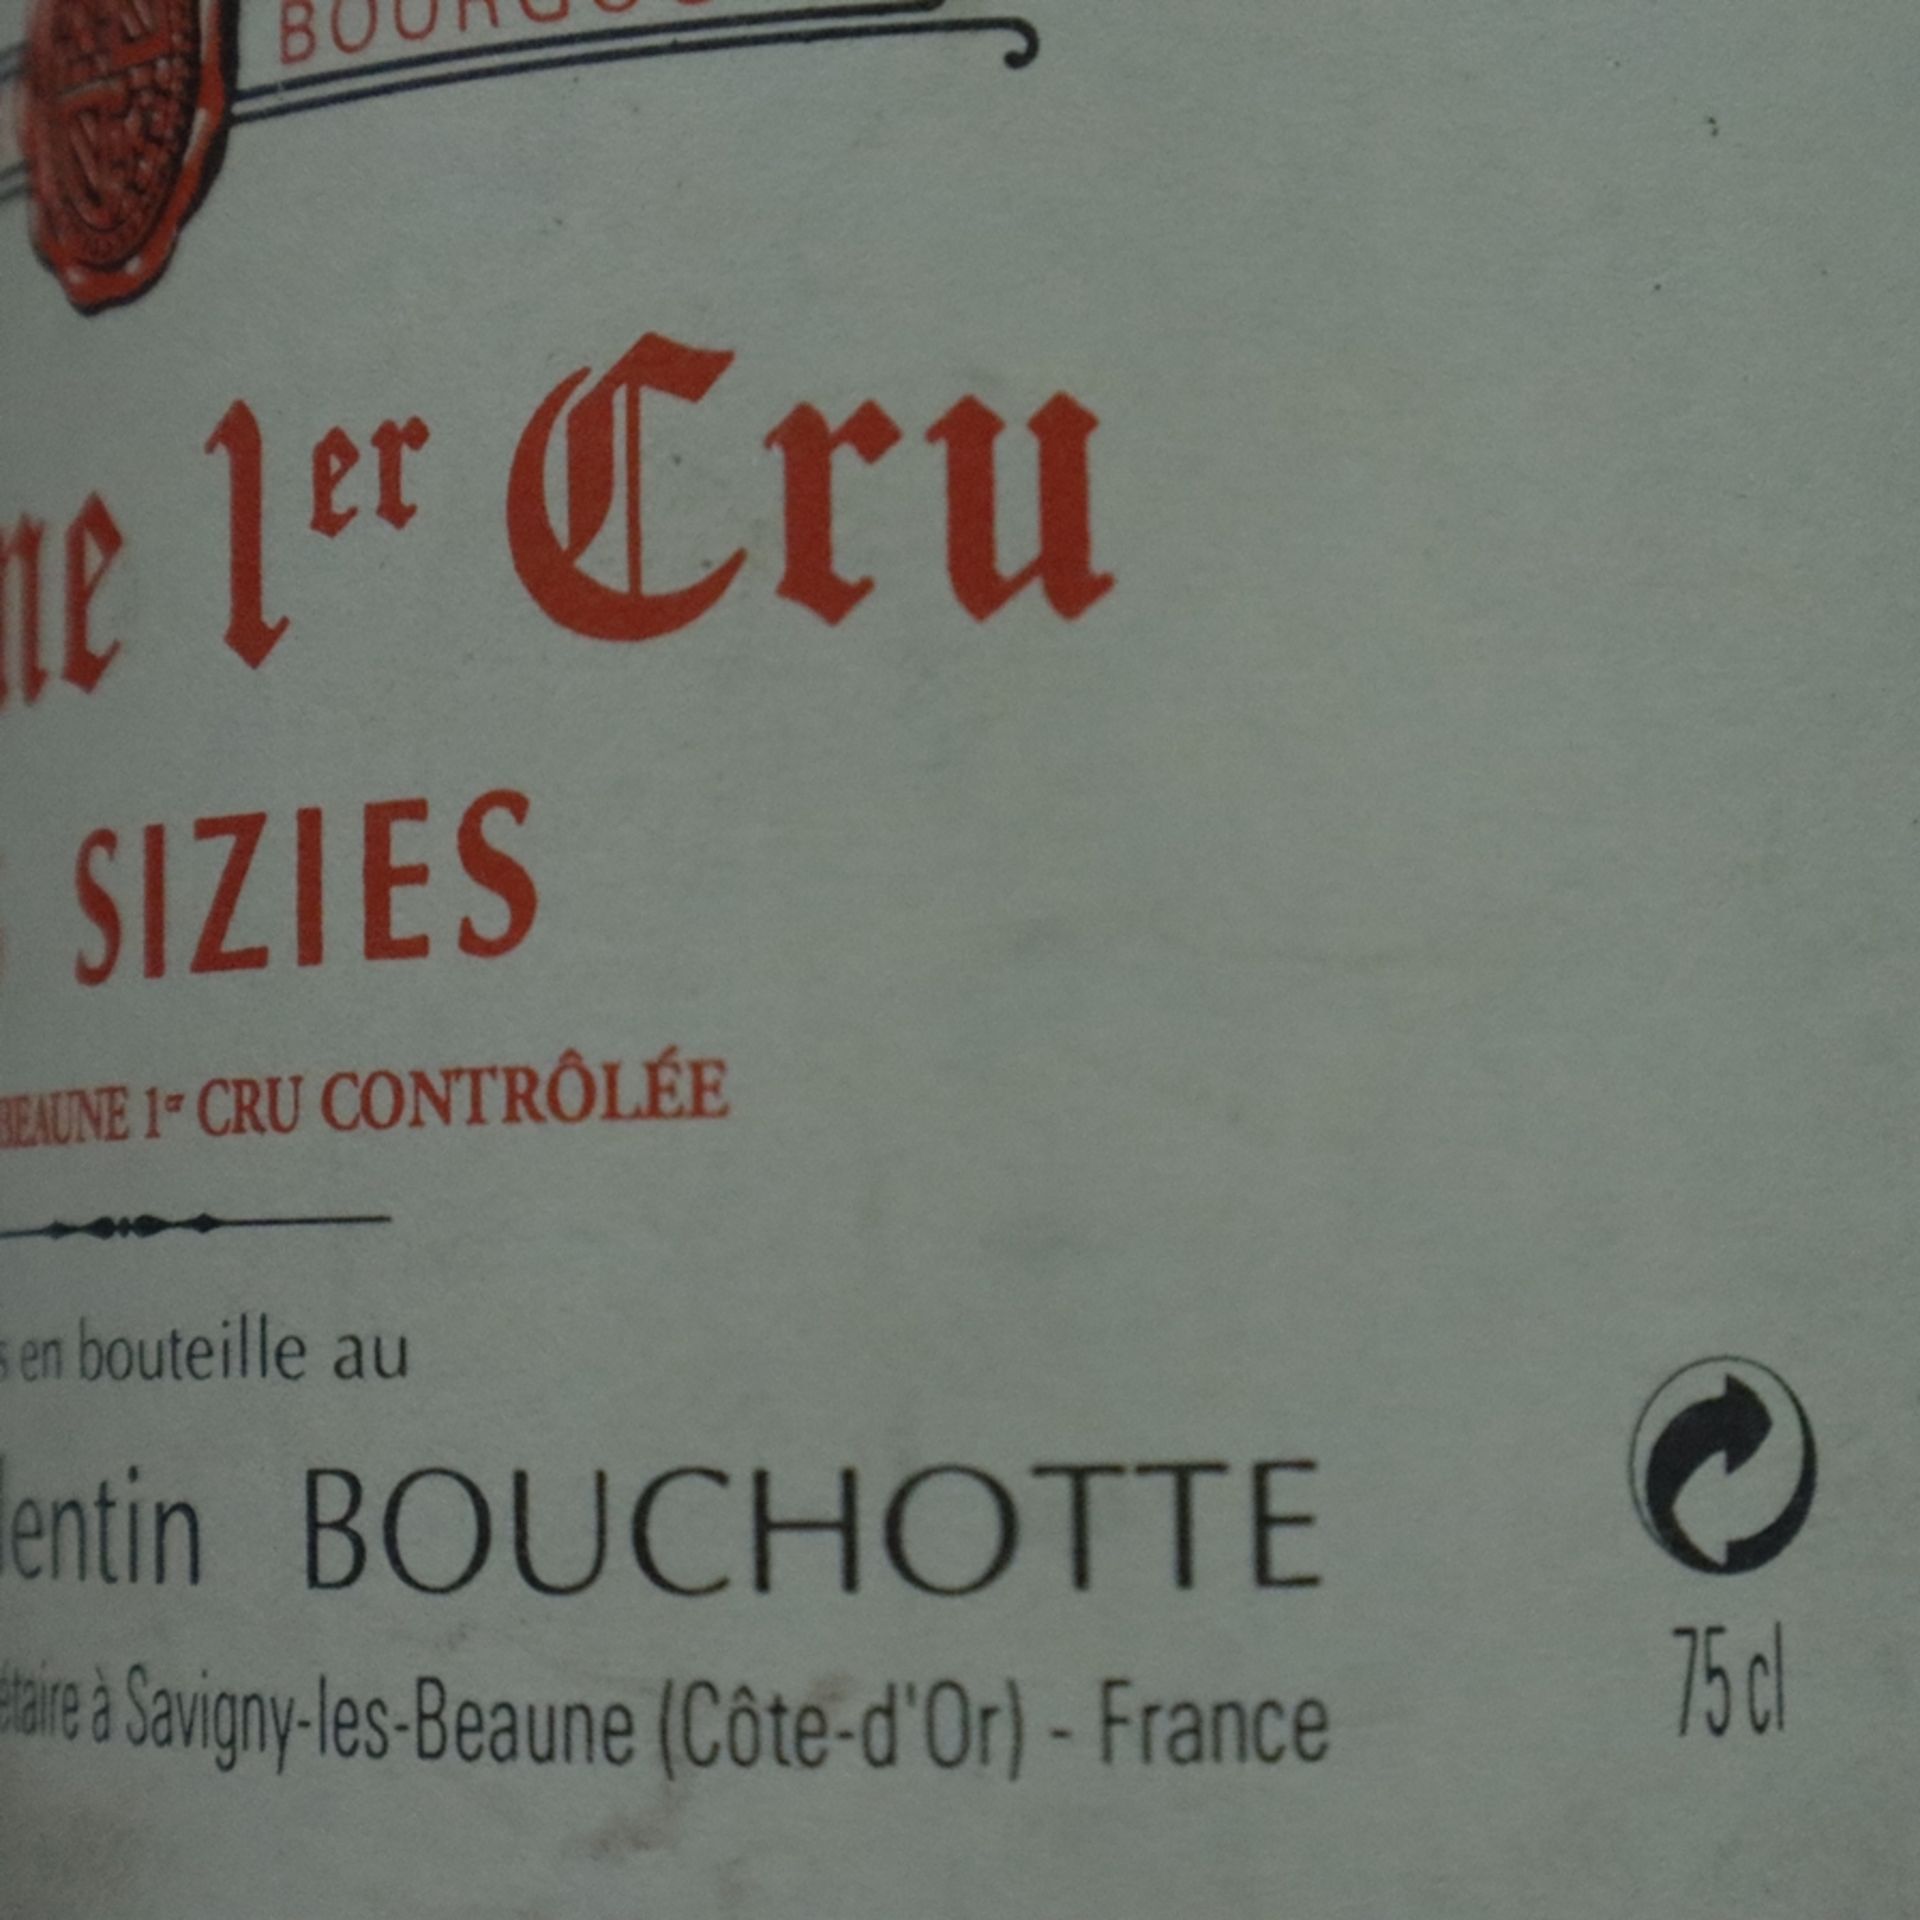 Weinkonvolut - 2 Flaschen 1978 + 2001, Domaine Valentin Bouchotte, Beaune 1er Cru, les Sizies, Fran - Bild 6 aus 7